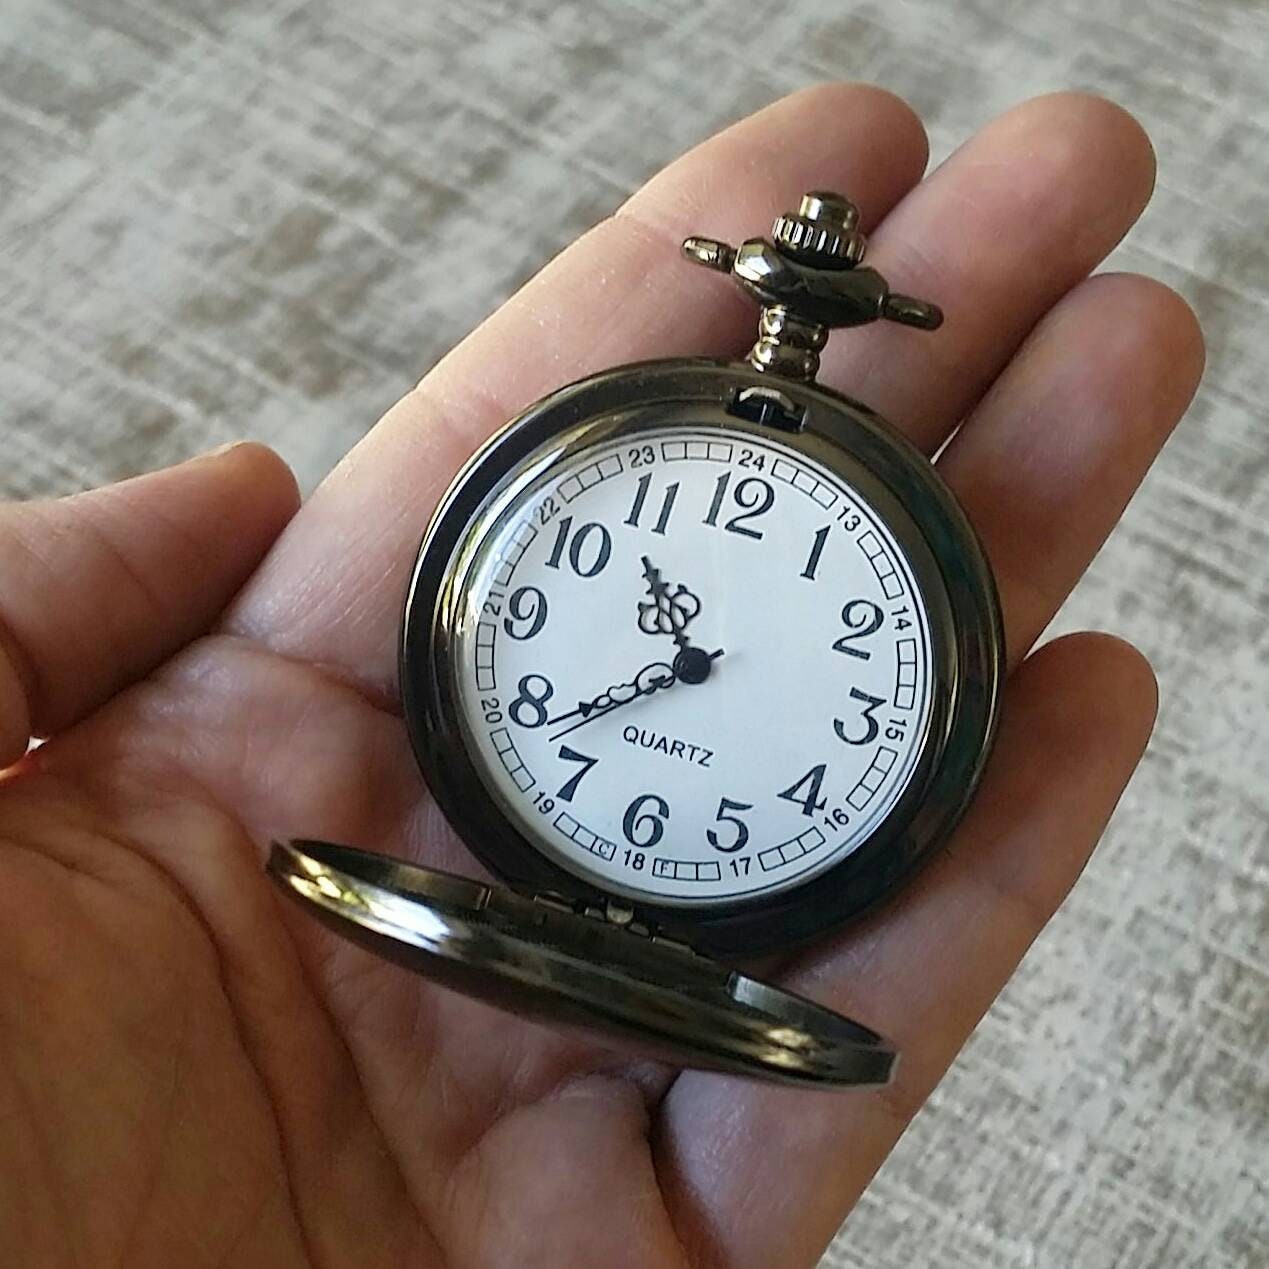 Reloj de escritura real, reloj de bolsillo personalizado, regalo de hombre personalizado, cadena de reloj grabada, firma personalizada, regalo del día del padre, steampunk.